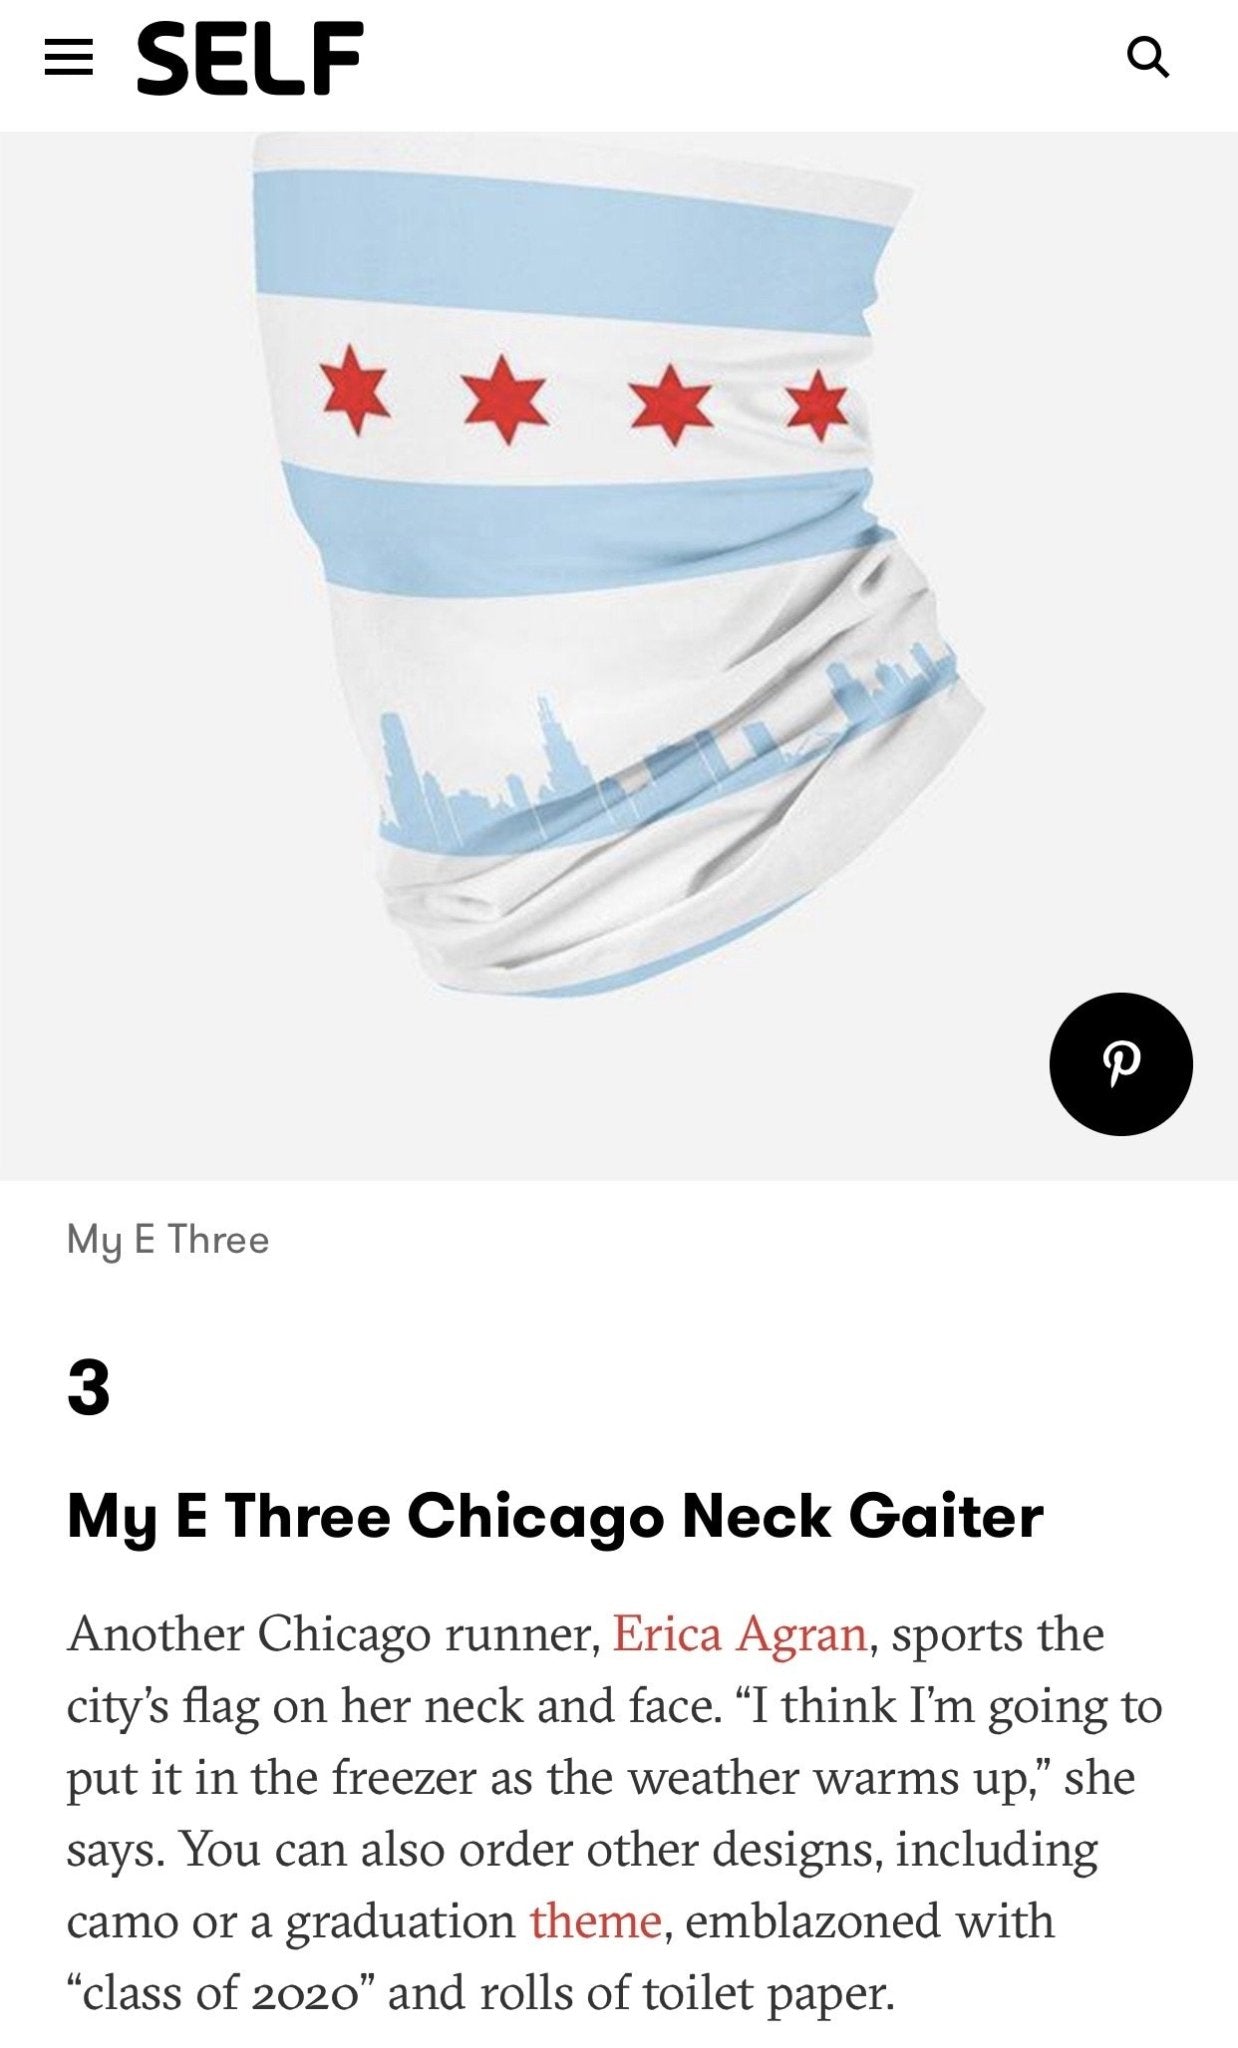 Chicago 4 PackNeck Gaiter - My E Three